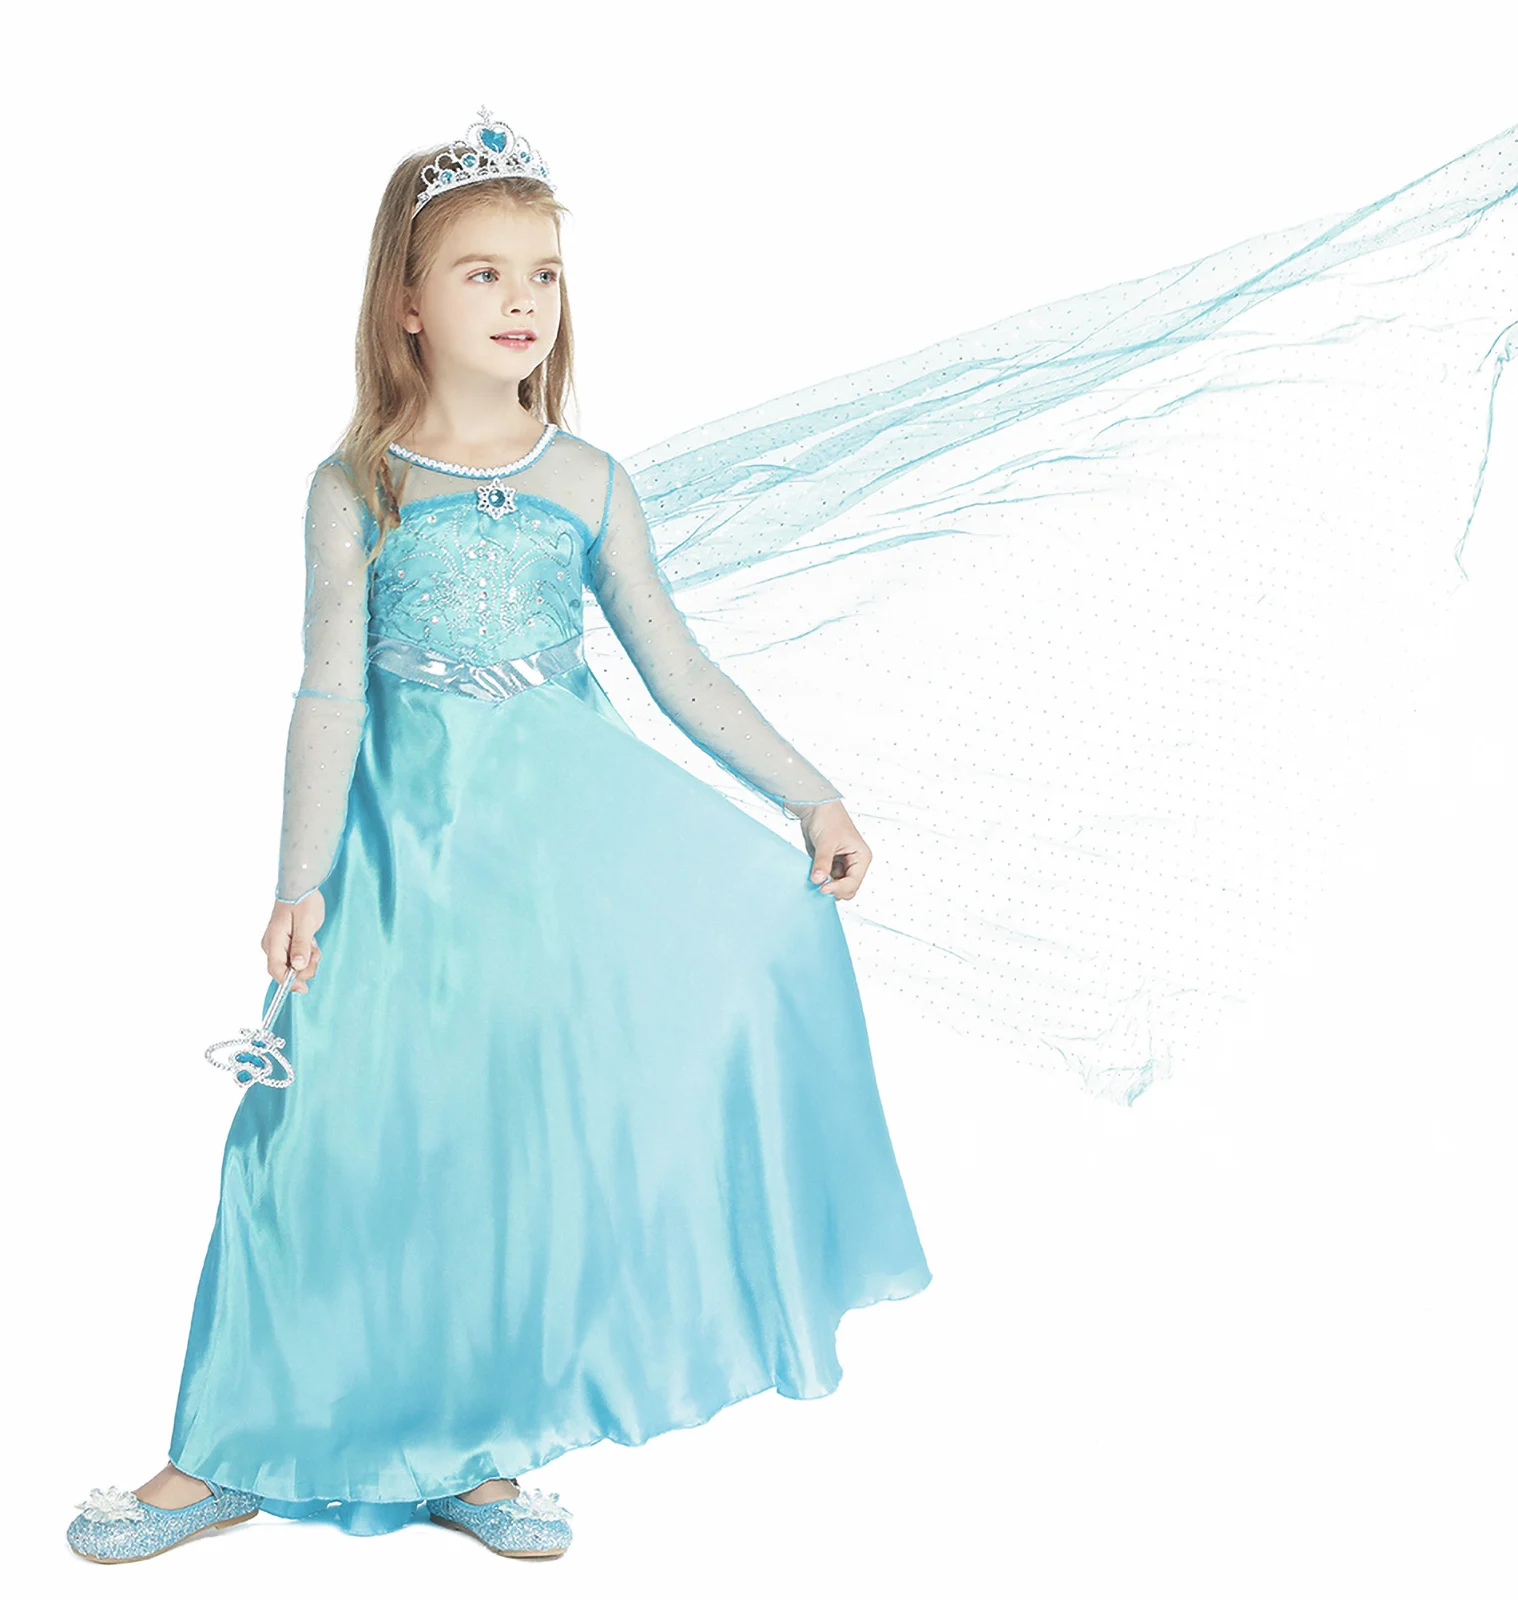 

Костюм Эльзы для девочек Jurebecia, платье Эльзы, платье принцессы холодного цвета для косплея, одежда для Хэллоуина, яркий костюм на день рождения